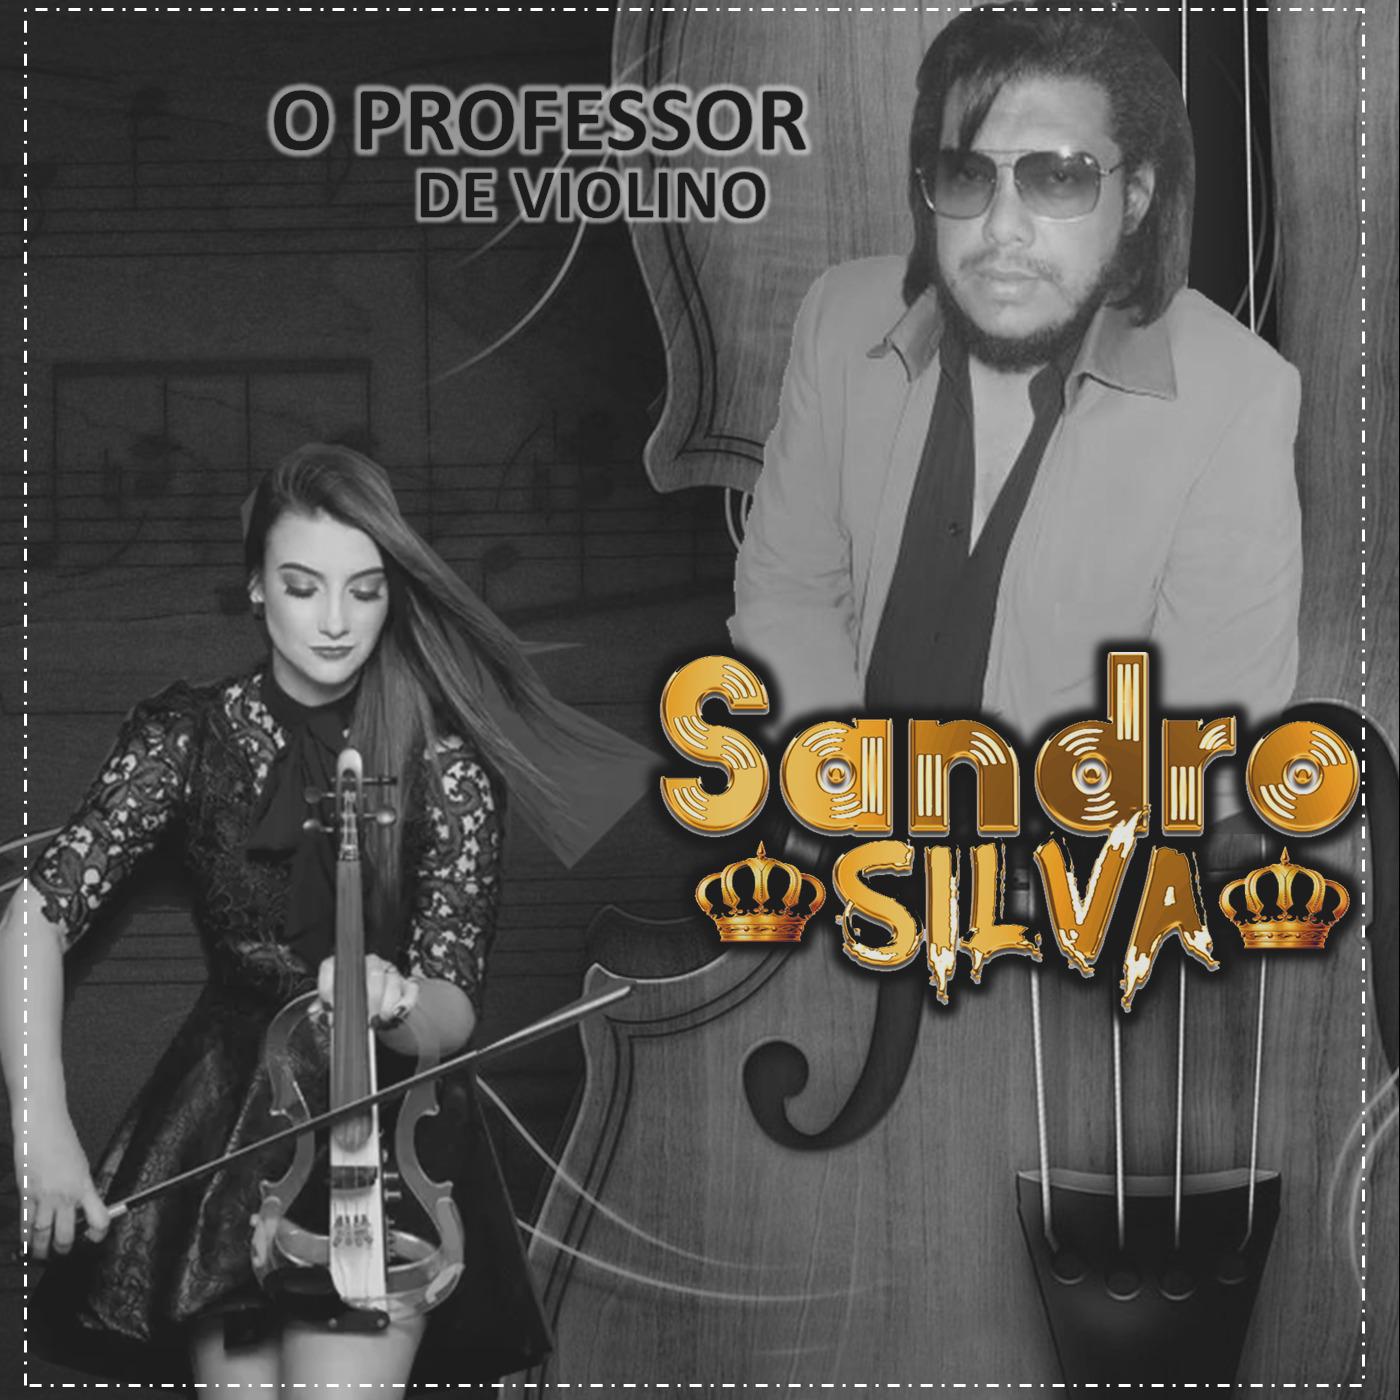 O Professor de Violino专辑